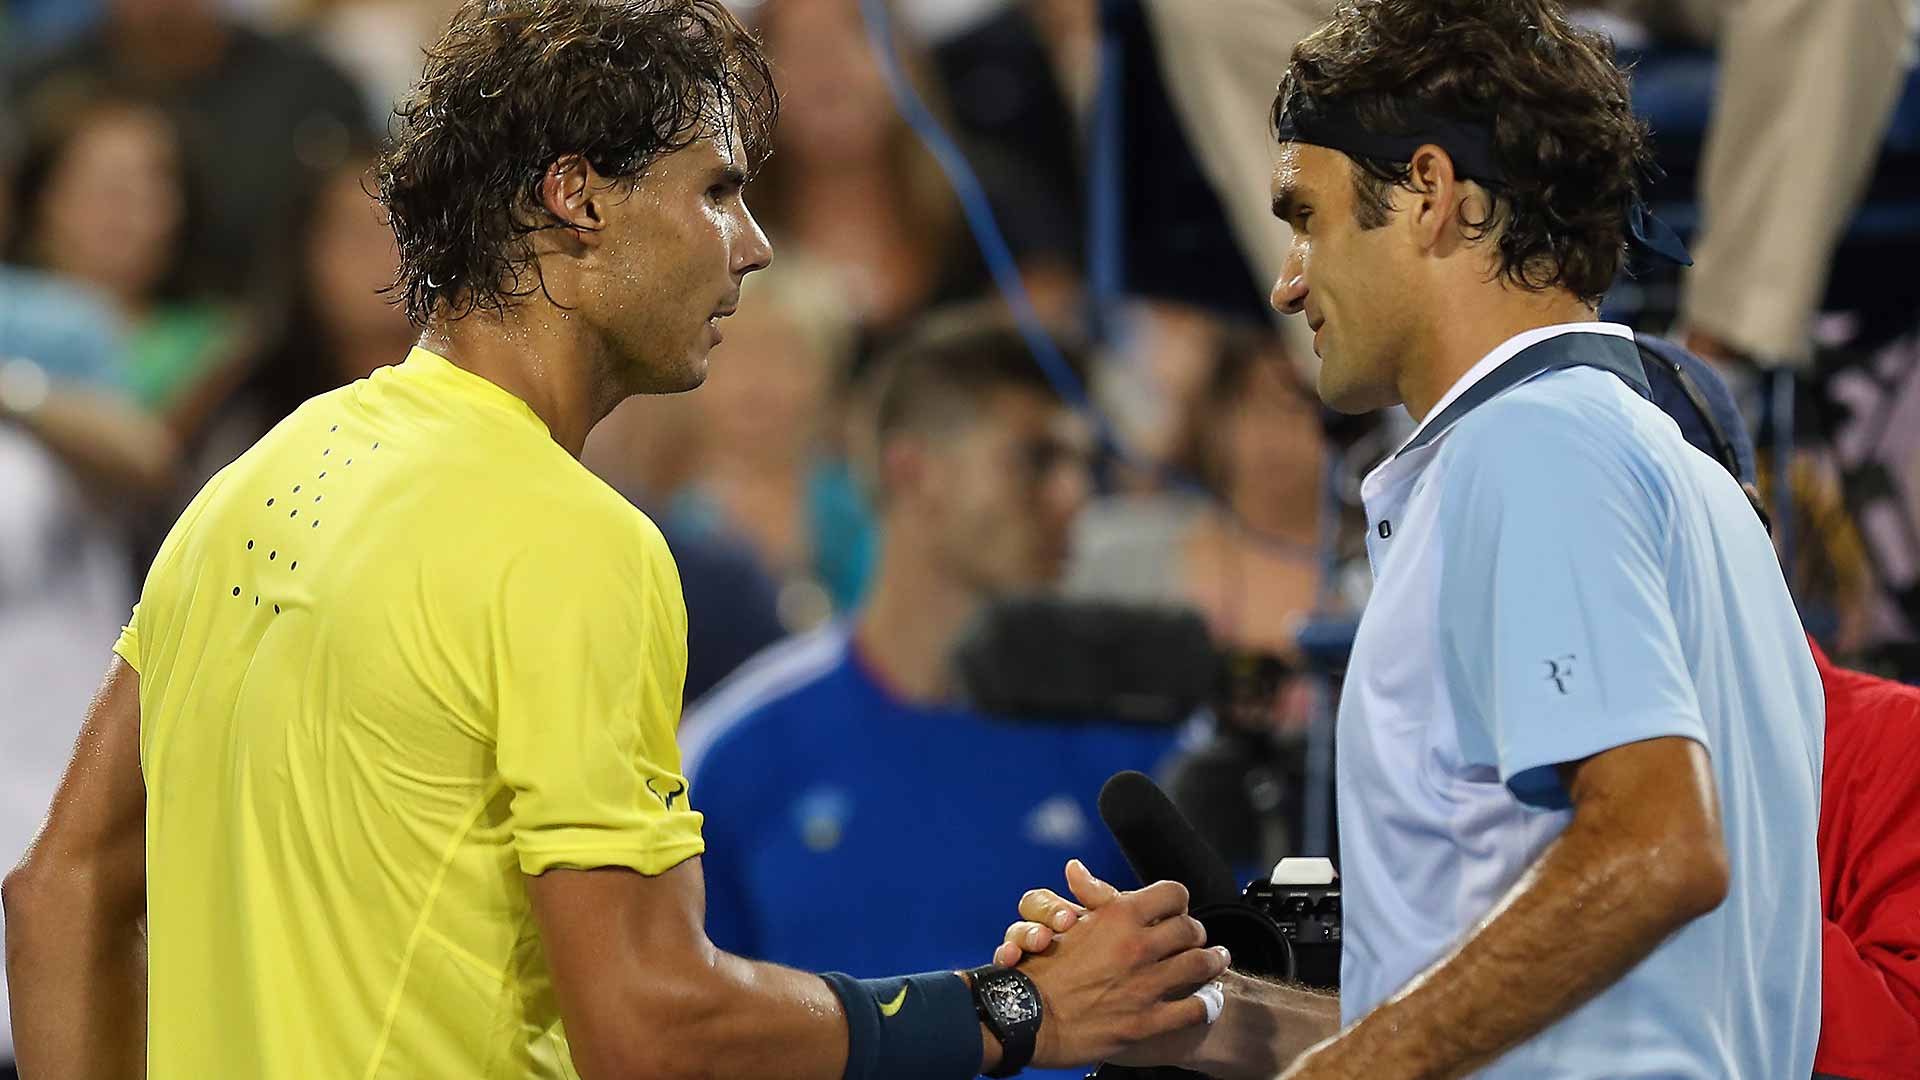 Rafael Nadal supera Roger Federer después de tres sets de altísima calidad en la final de Cincinnati 2013.